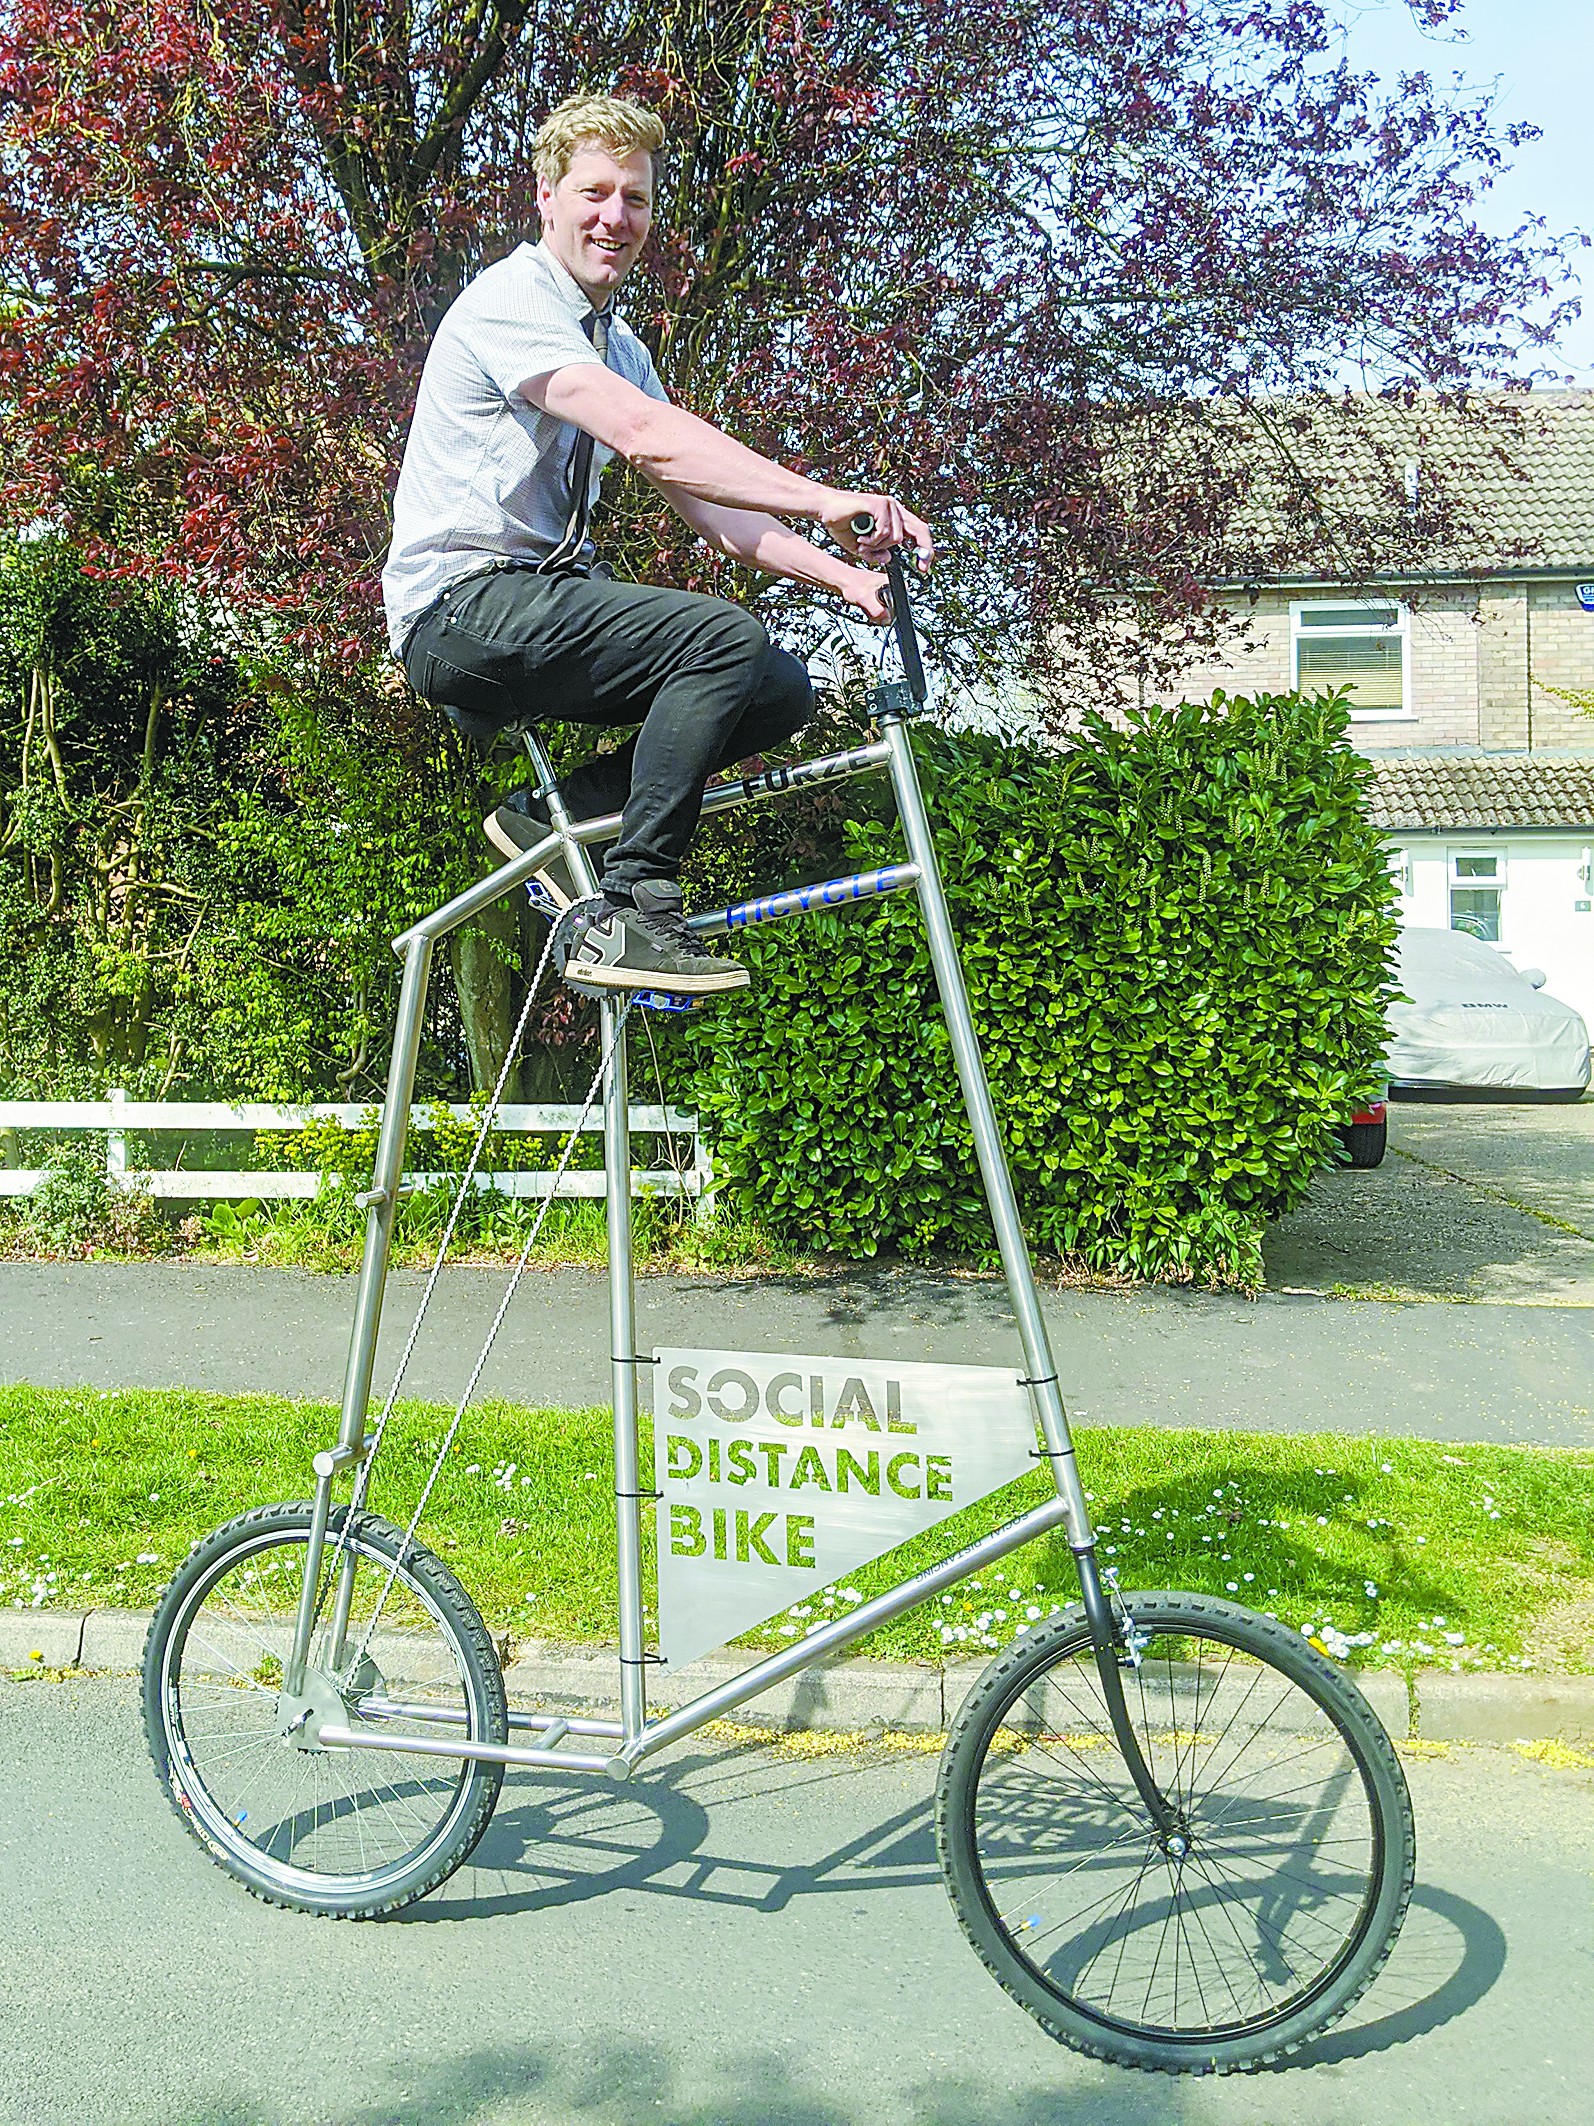 英国人骑安全自行车保持社交距离：2米高(图)